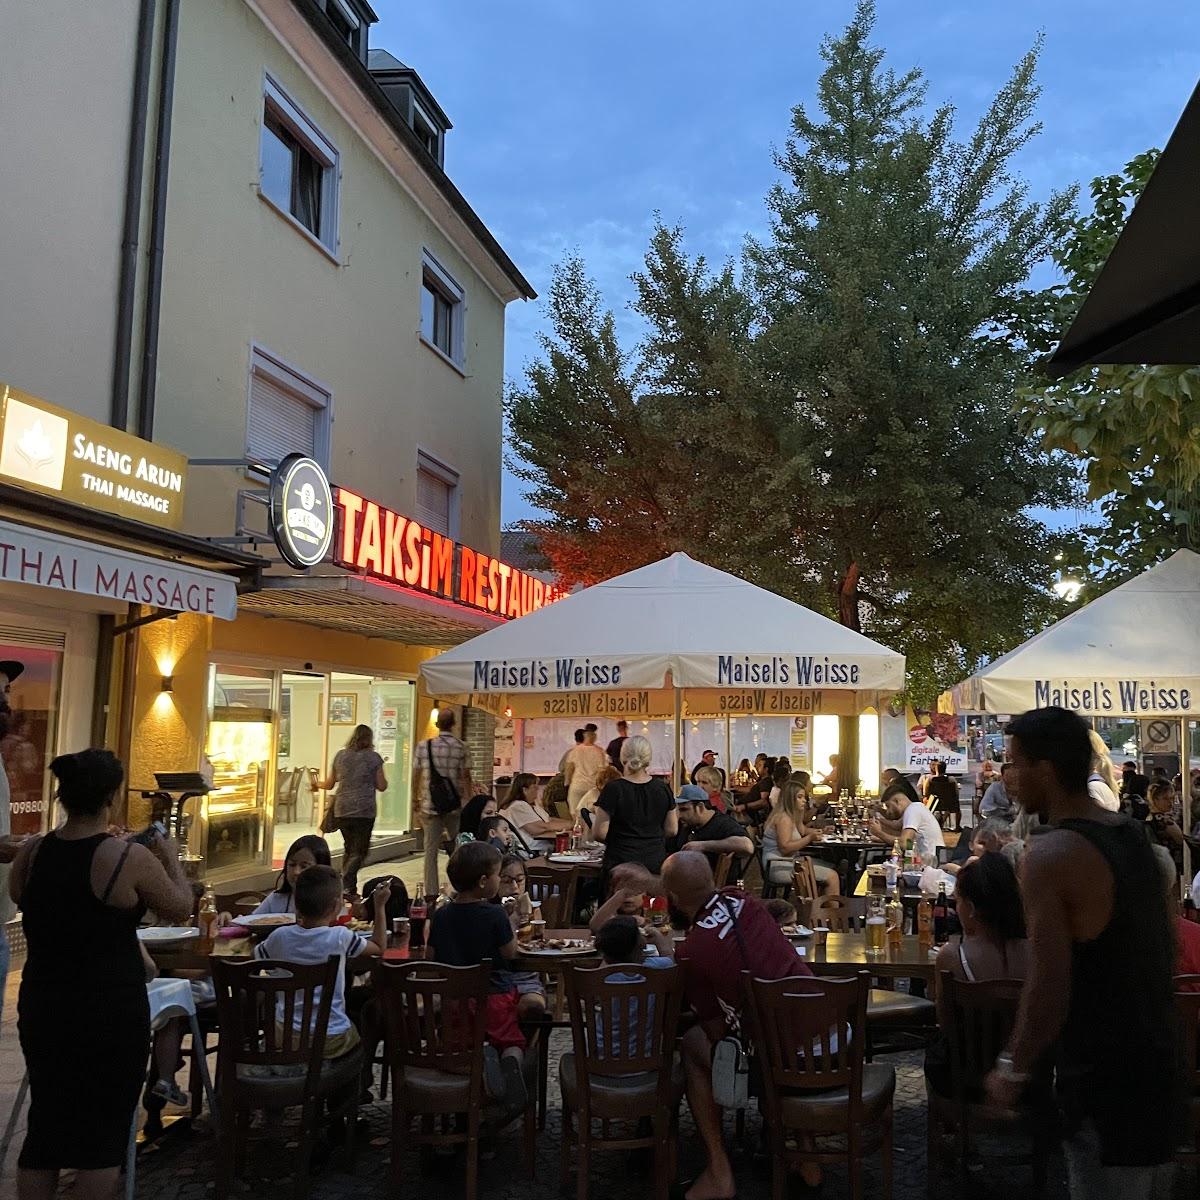 Restaurant "Taksim Restaurant" in Weil am Rhein